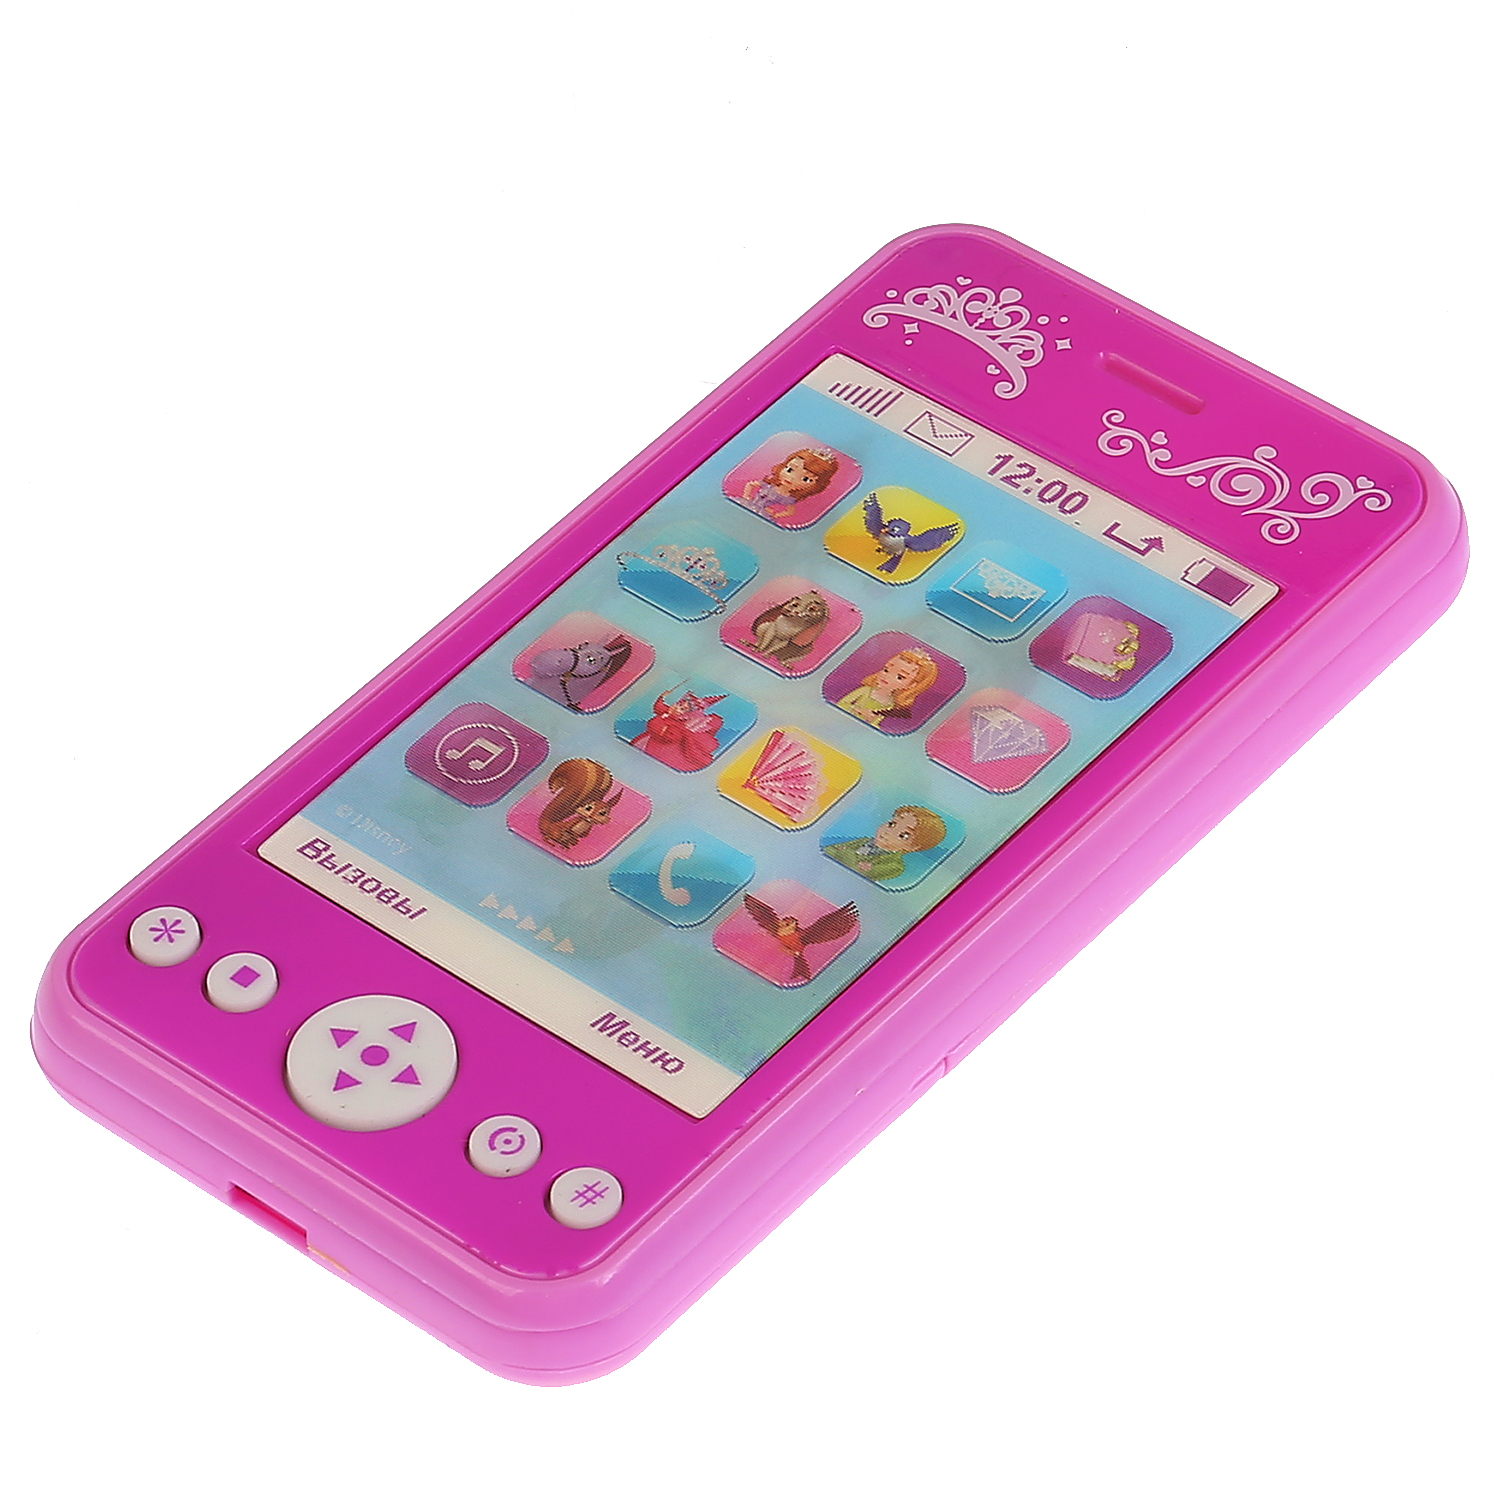 Купить игрушку телефон. Tt837-sof телефончик. Игрушечный смартфон для детей. Детский розовый смартфон. Детский смартфон настоящий.